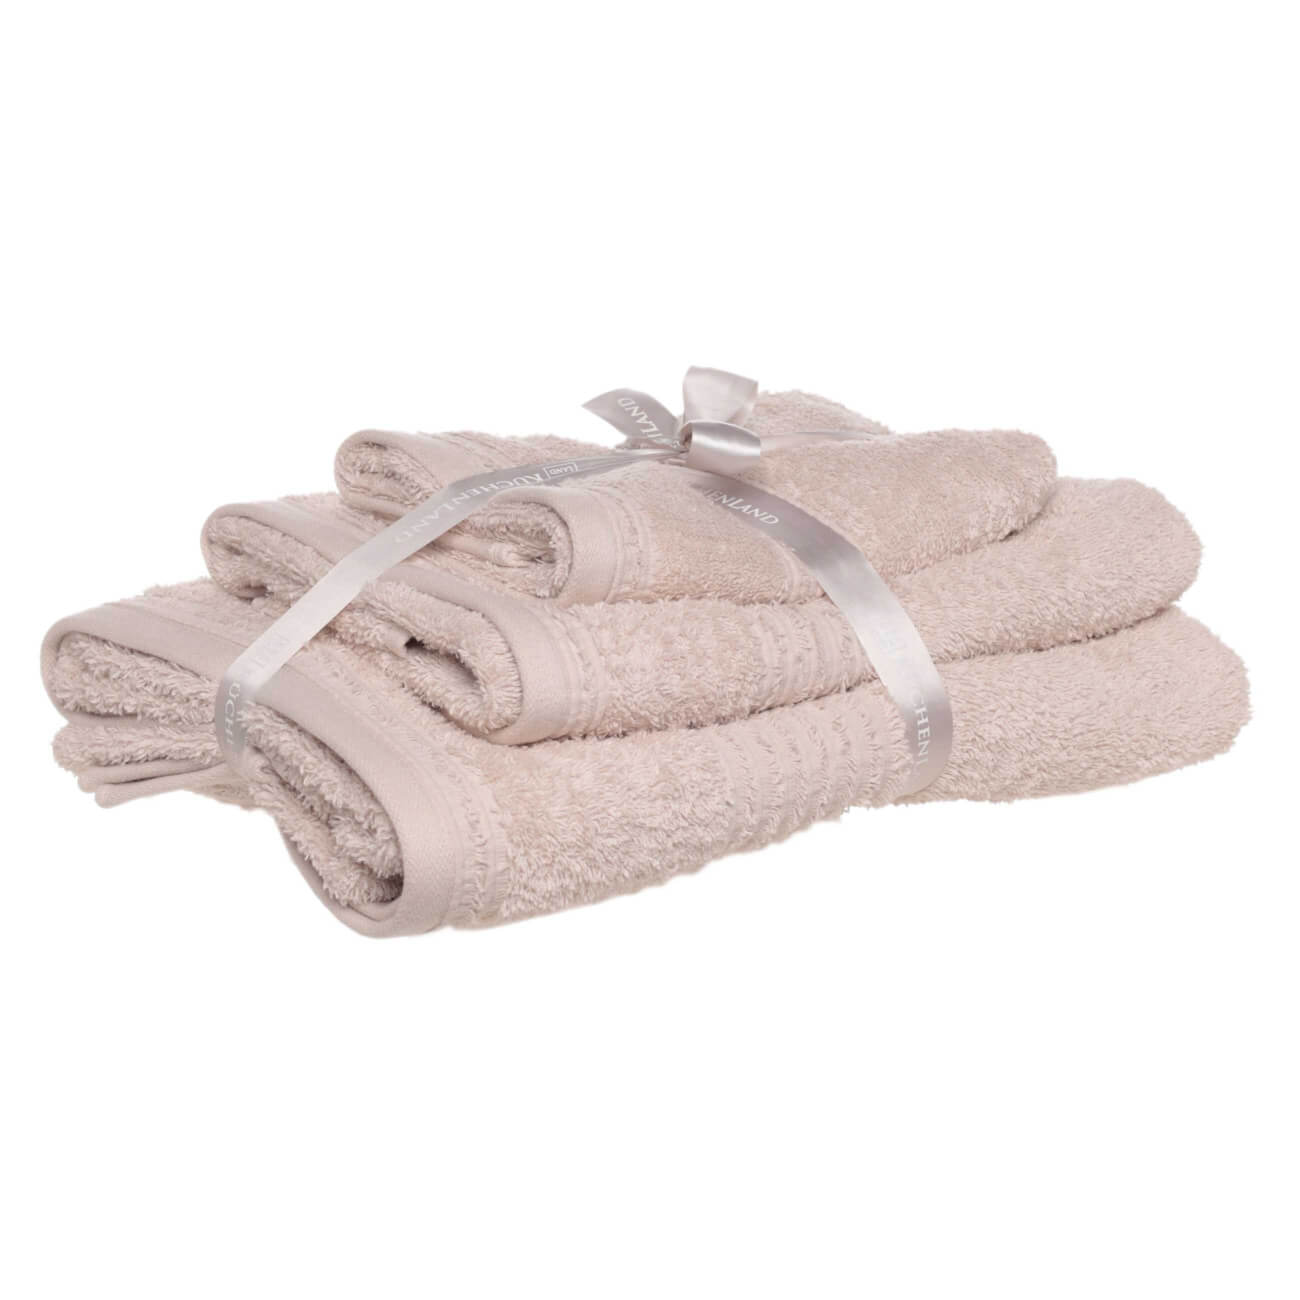 Towel set, 40x60 / 50x90 / 70x140 cm, 3 pcs, cotton, beige, Natural cotton изображение № 1